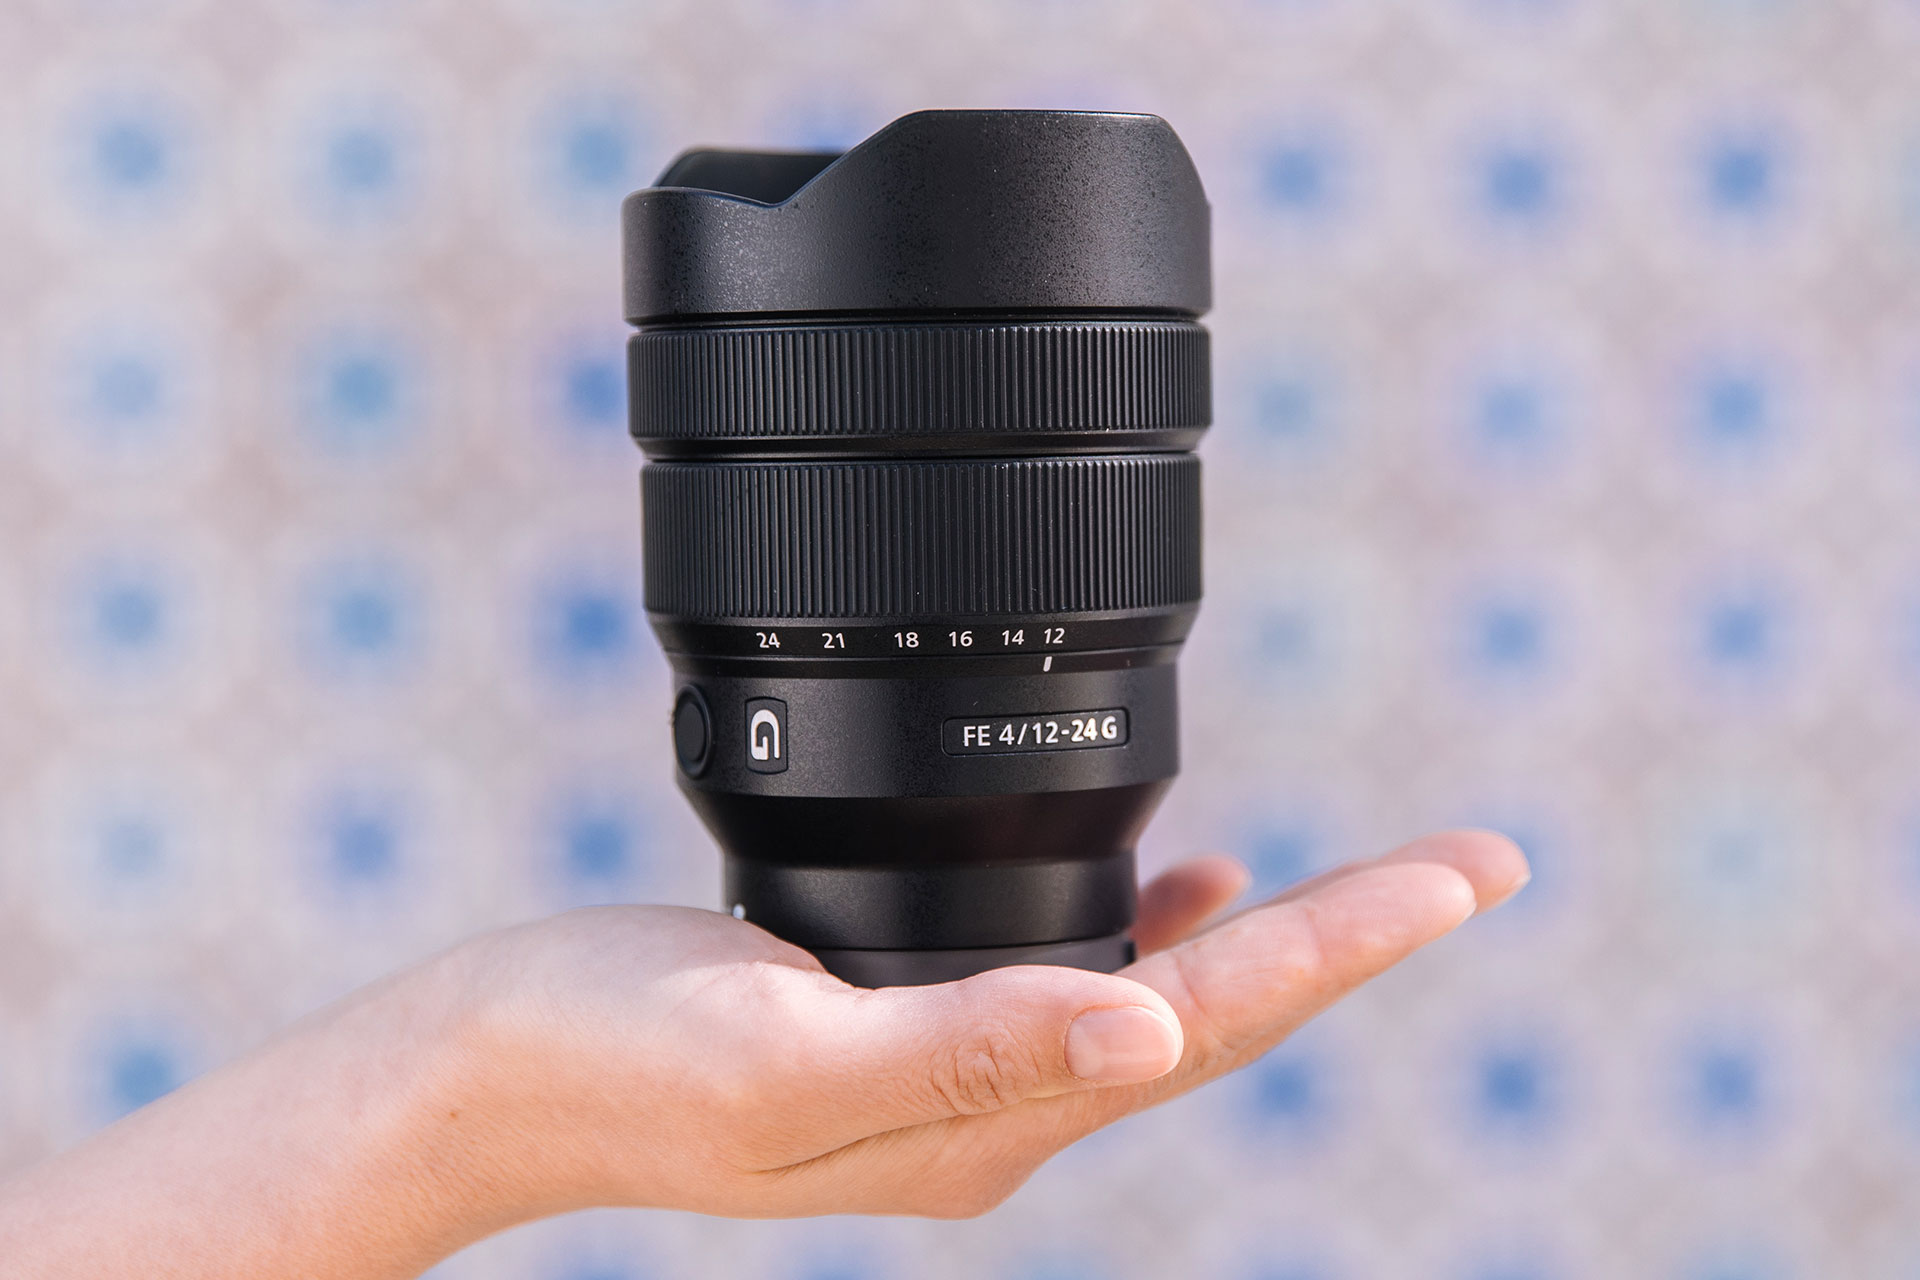 Obiektyw Sony FE 12-24 mm f/4.0 G, jest idealny do zdjęć architektury, krajobrazów, czy nagrywania vlogów.